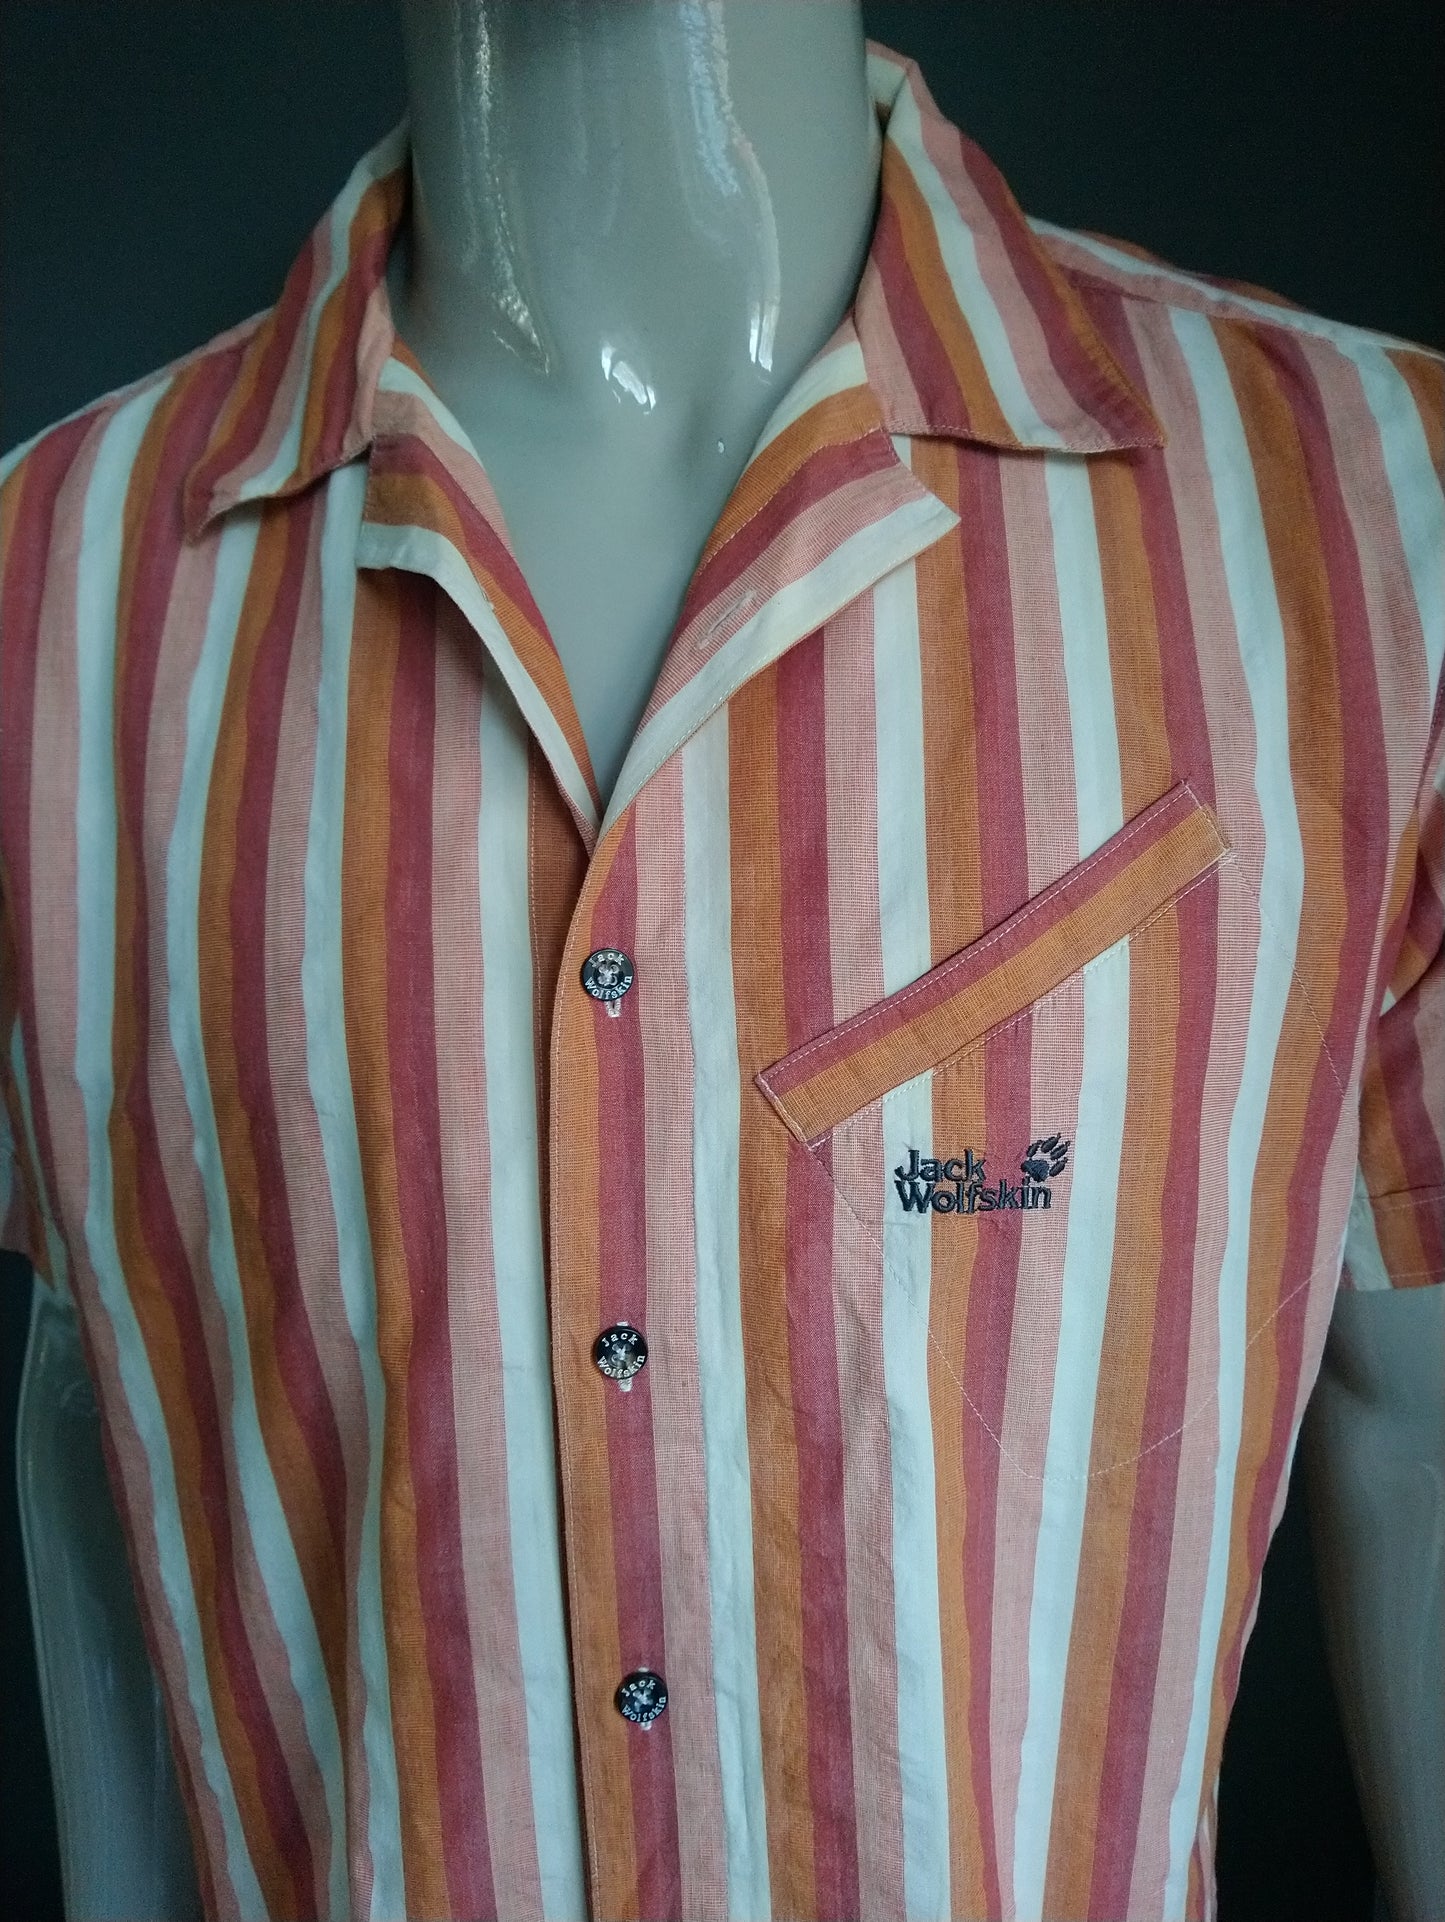 Jack Wolfskin Shirt short sleeve. Orange beige striped. Size XL.